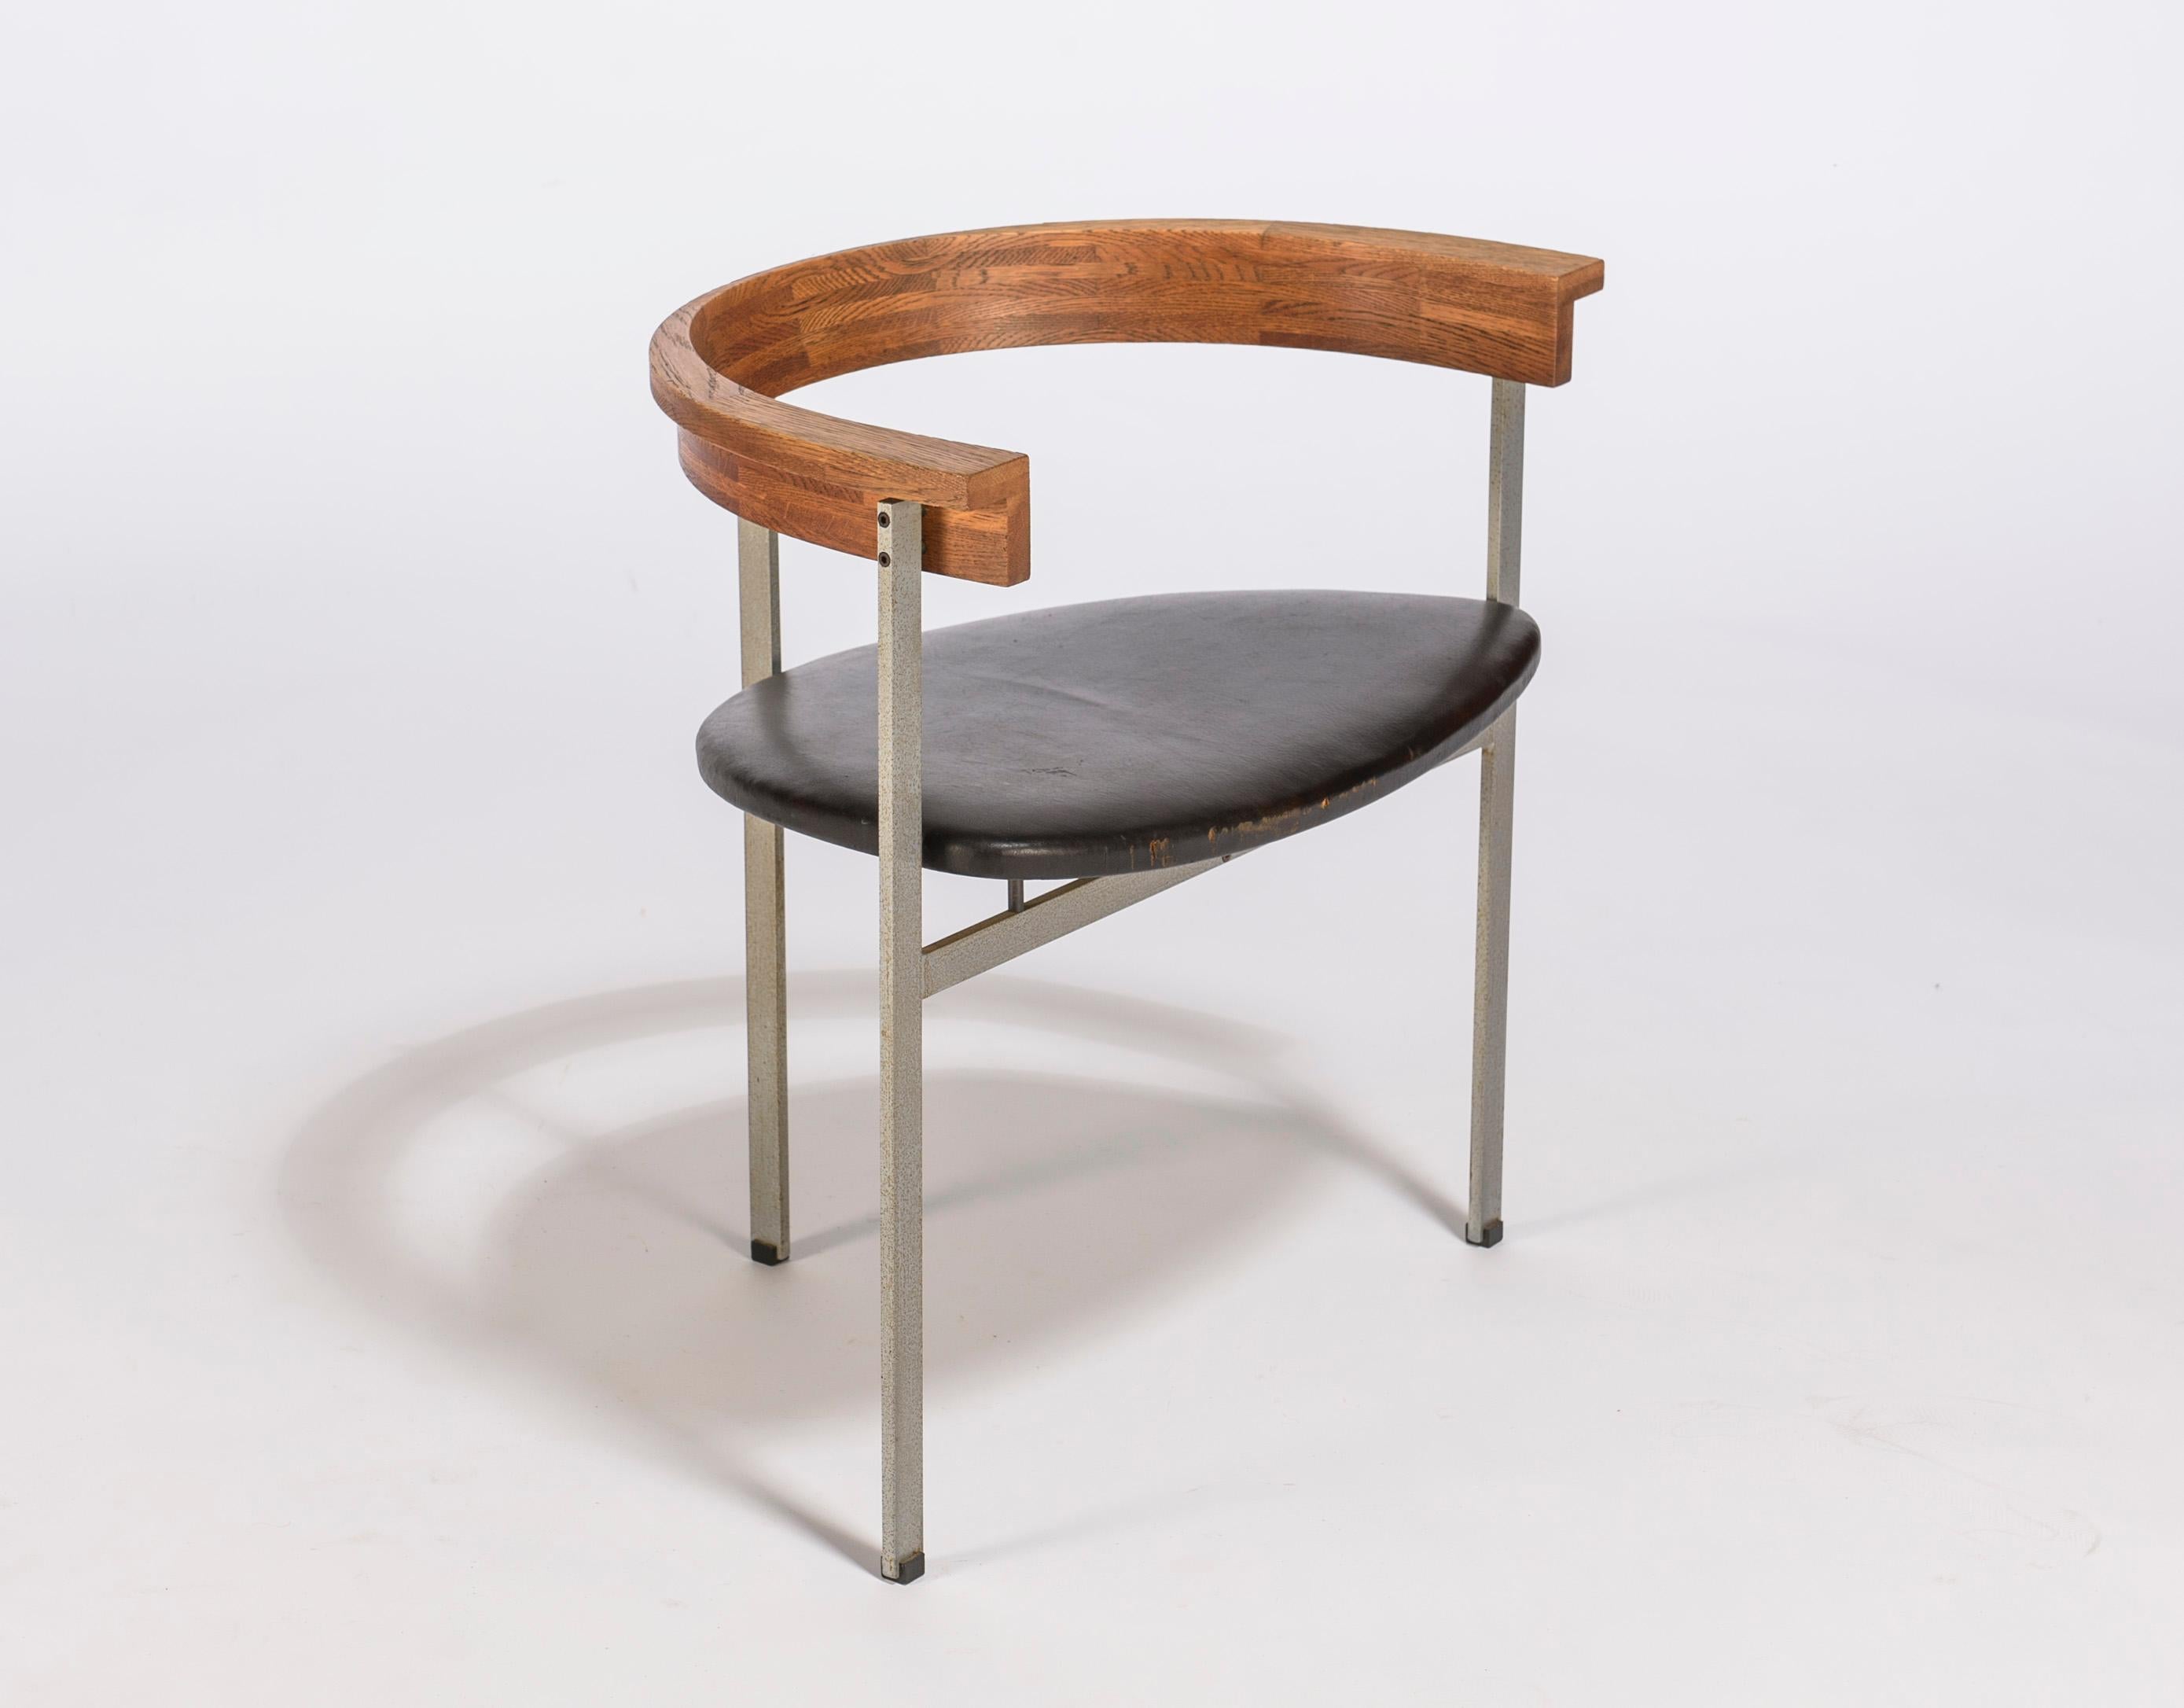 Satz von vier dreibeinigen Poul Kjærholm PK11 Esszimmerstühlen in Esche und originalem Leder im Originalzustand. Entworfen im Jahr 1957 und hergestellt von E. Kold Christiansen. Signiert mit eingeprägter Marke.